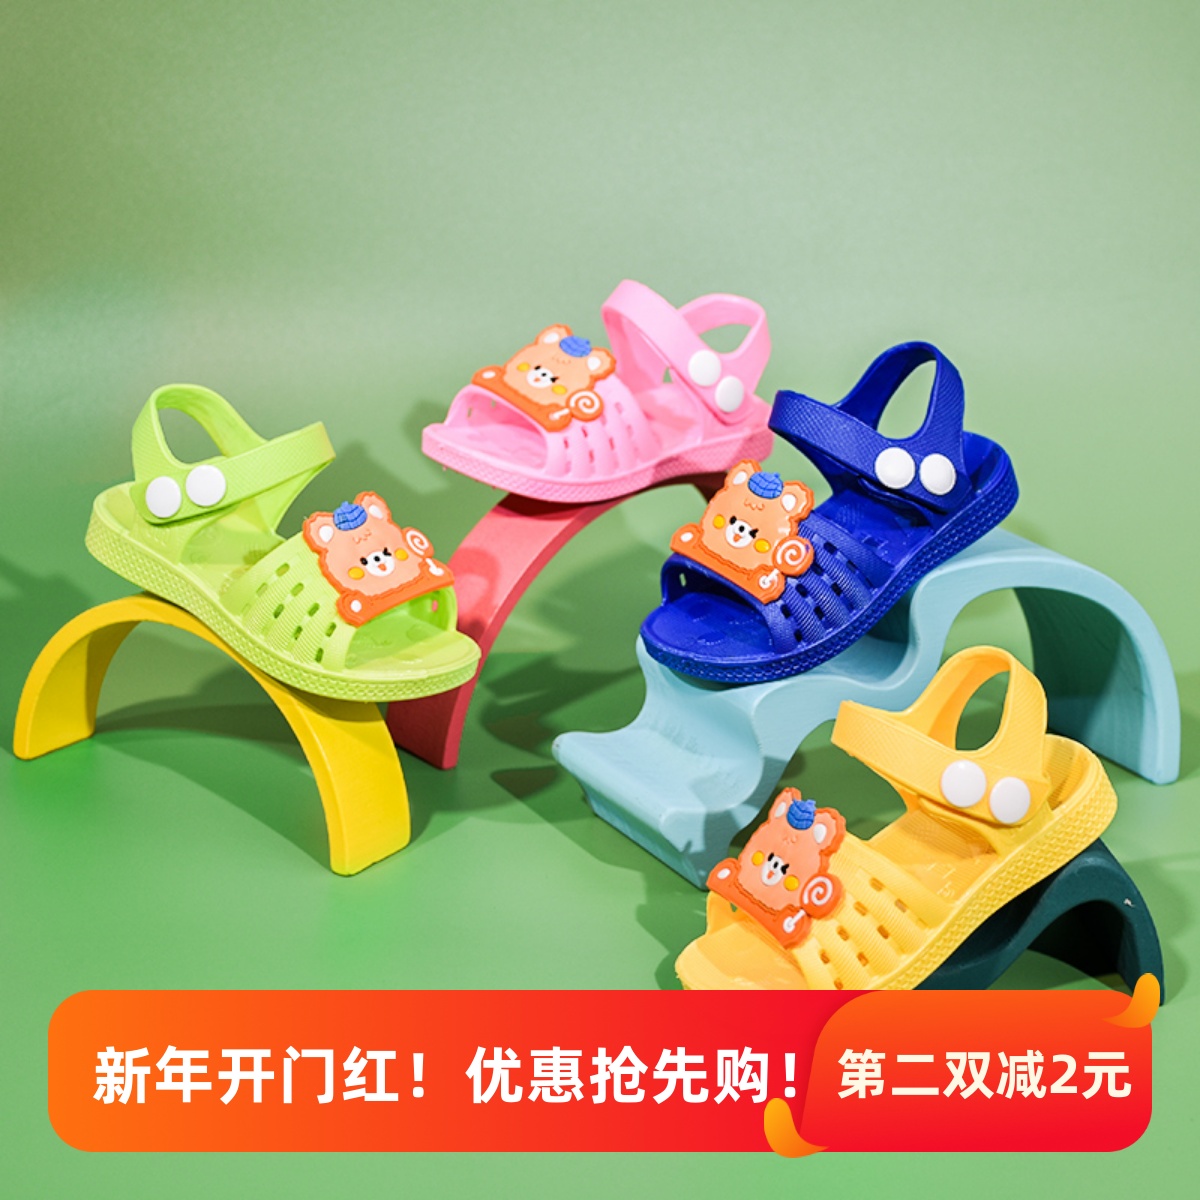 防尿塑料幼儿凉鞋儿童男童女童防滑软底宝宝0-1-2-3岁夏季学步鞋